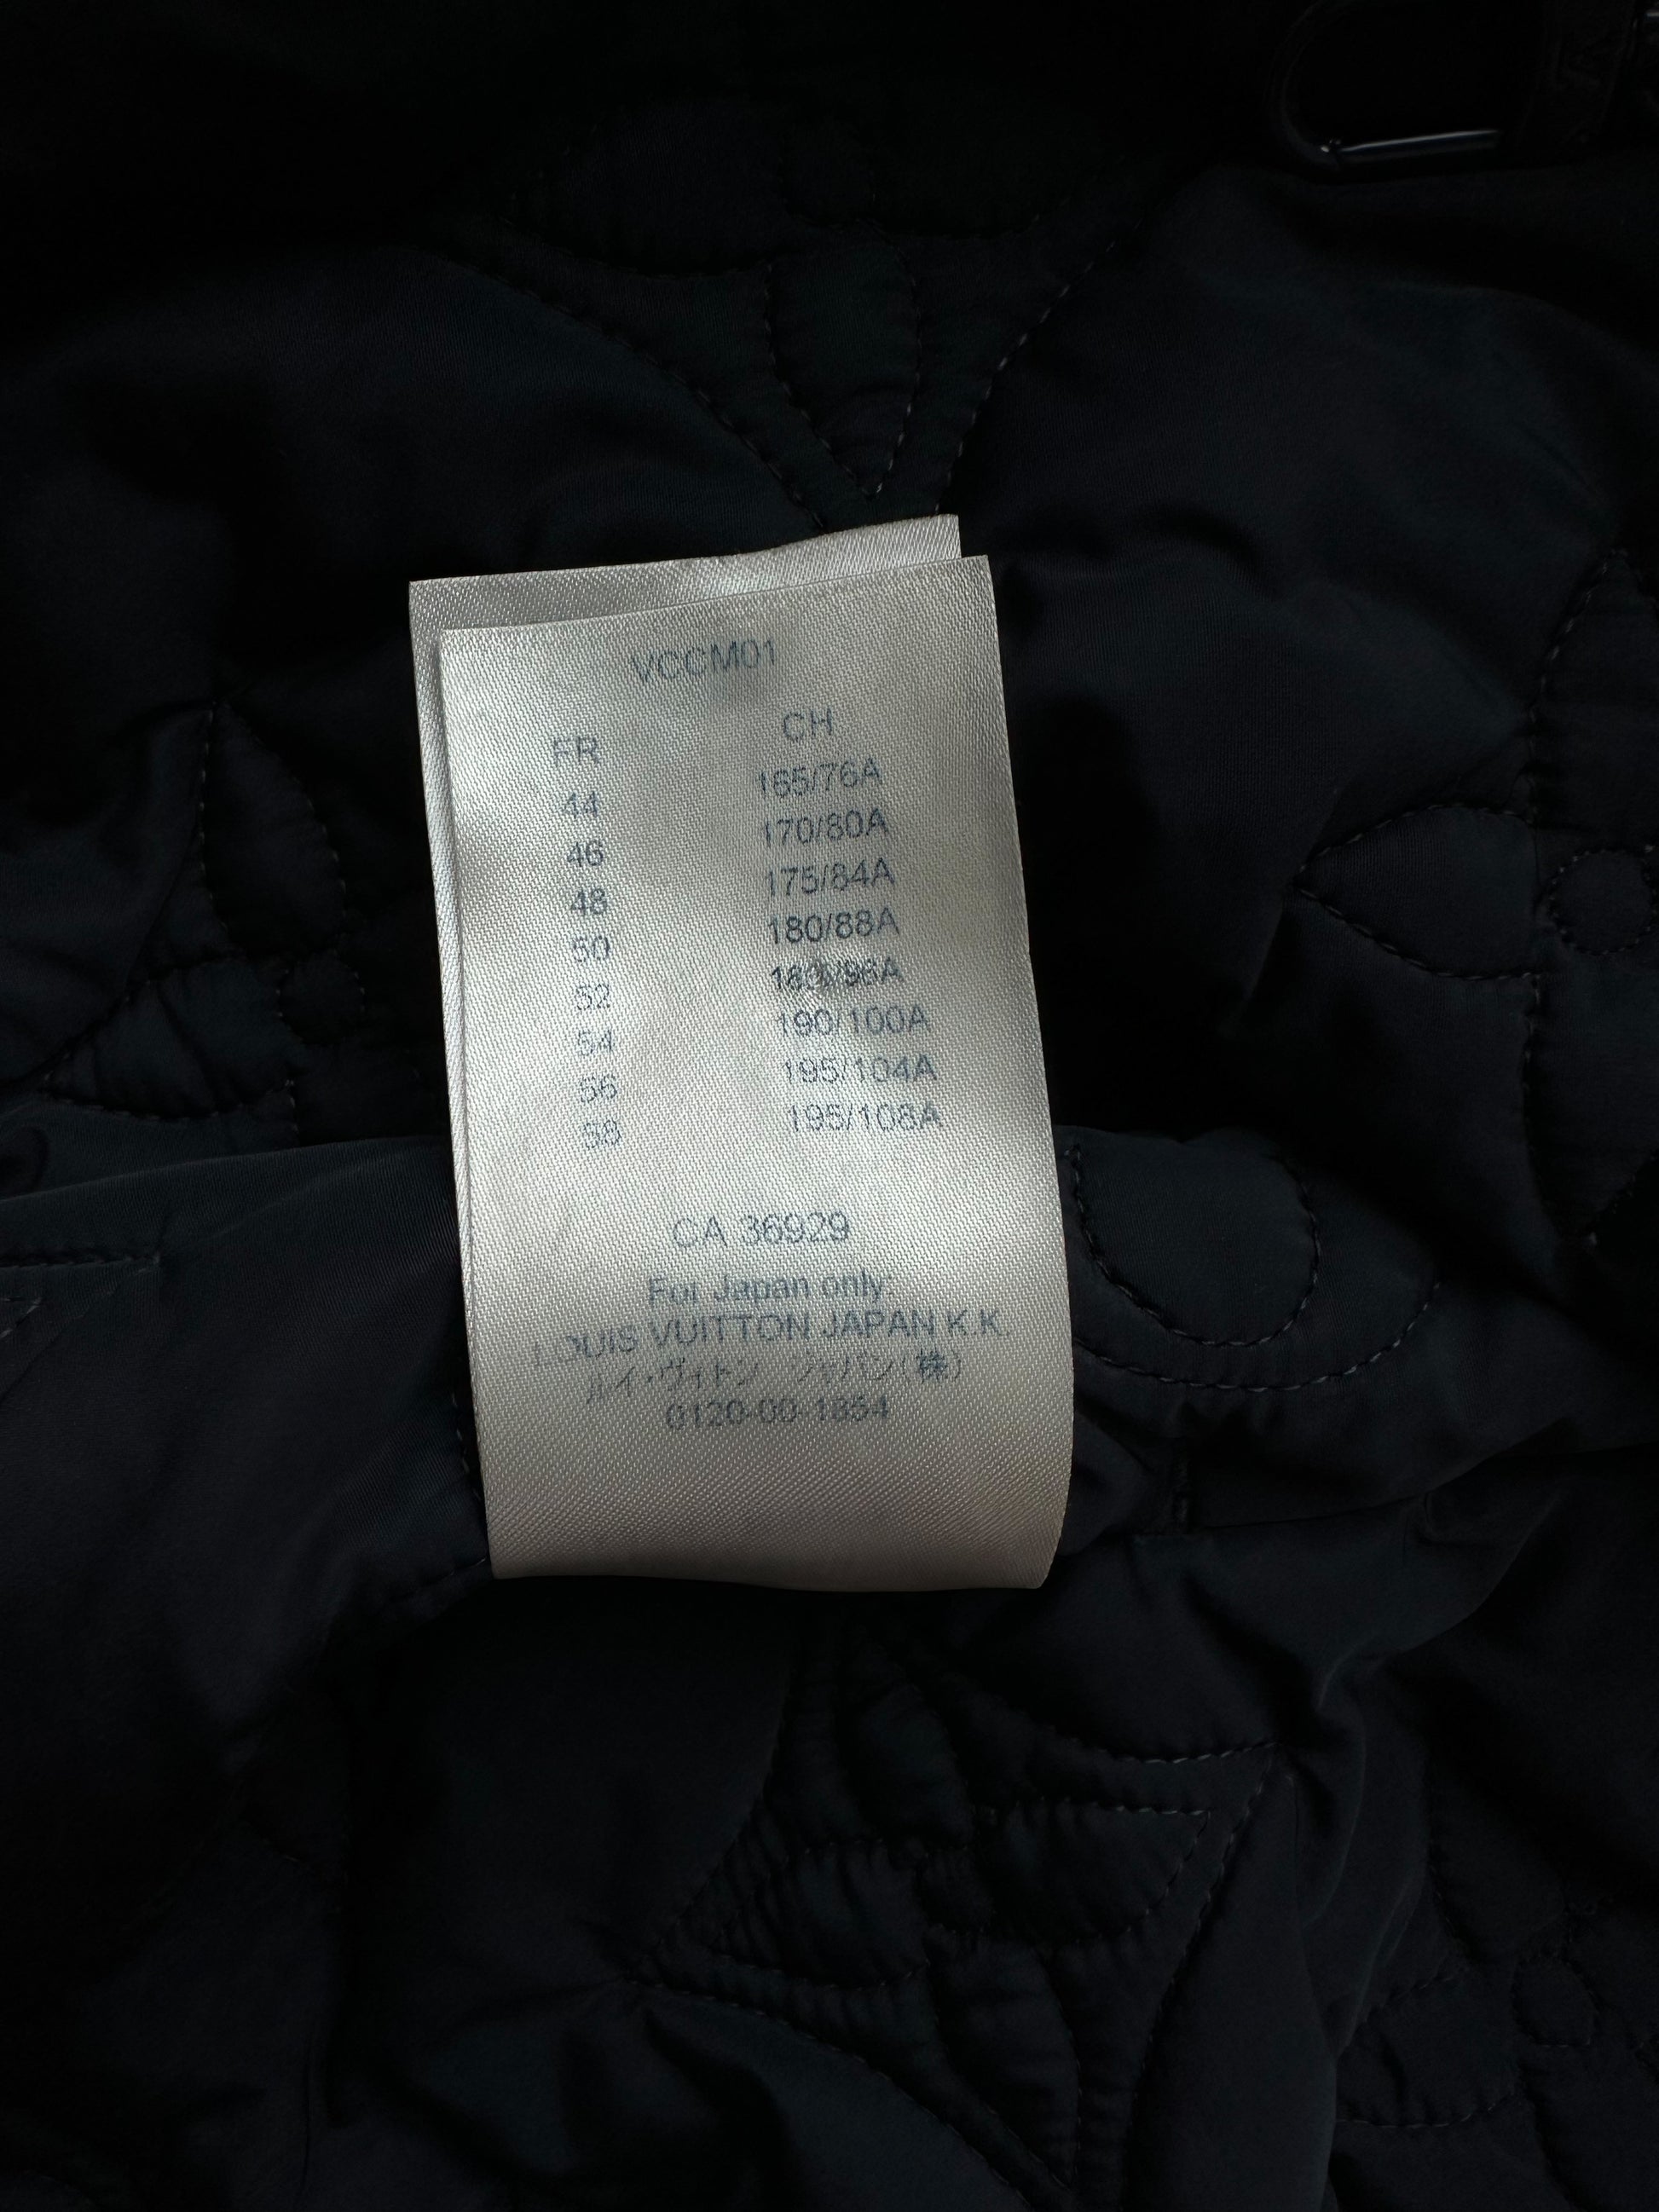 Louis Vuitton Navy Monogram Track Jackets – Savonches